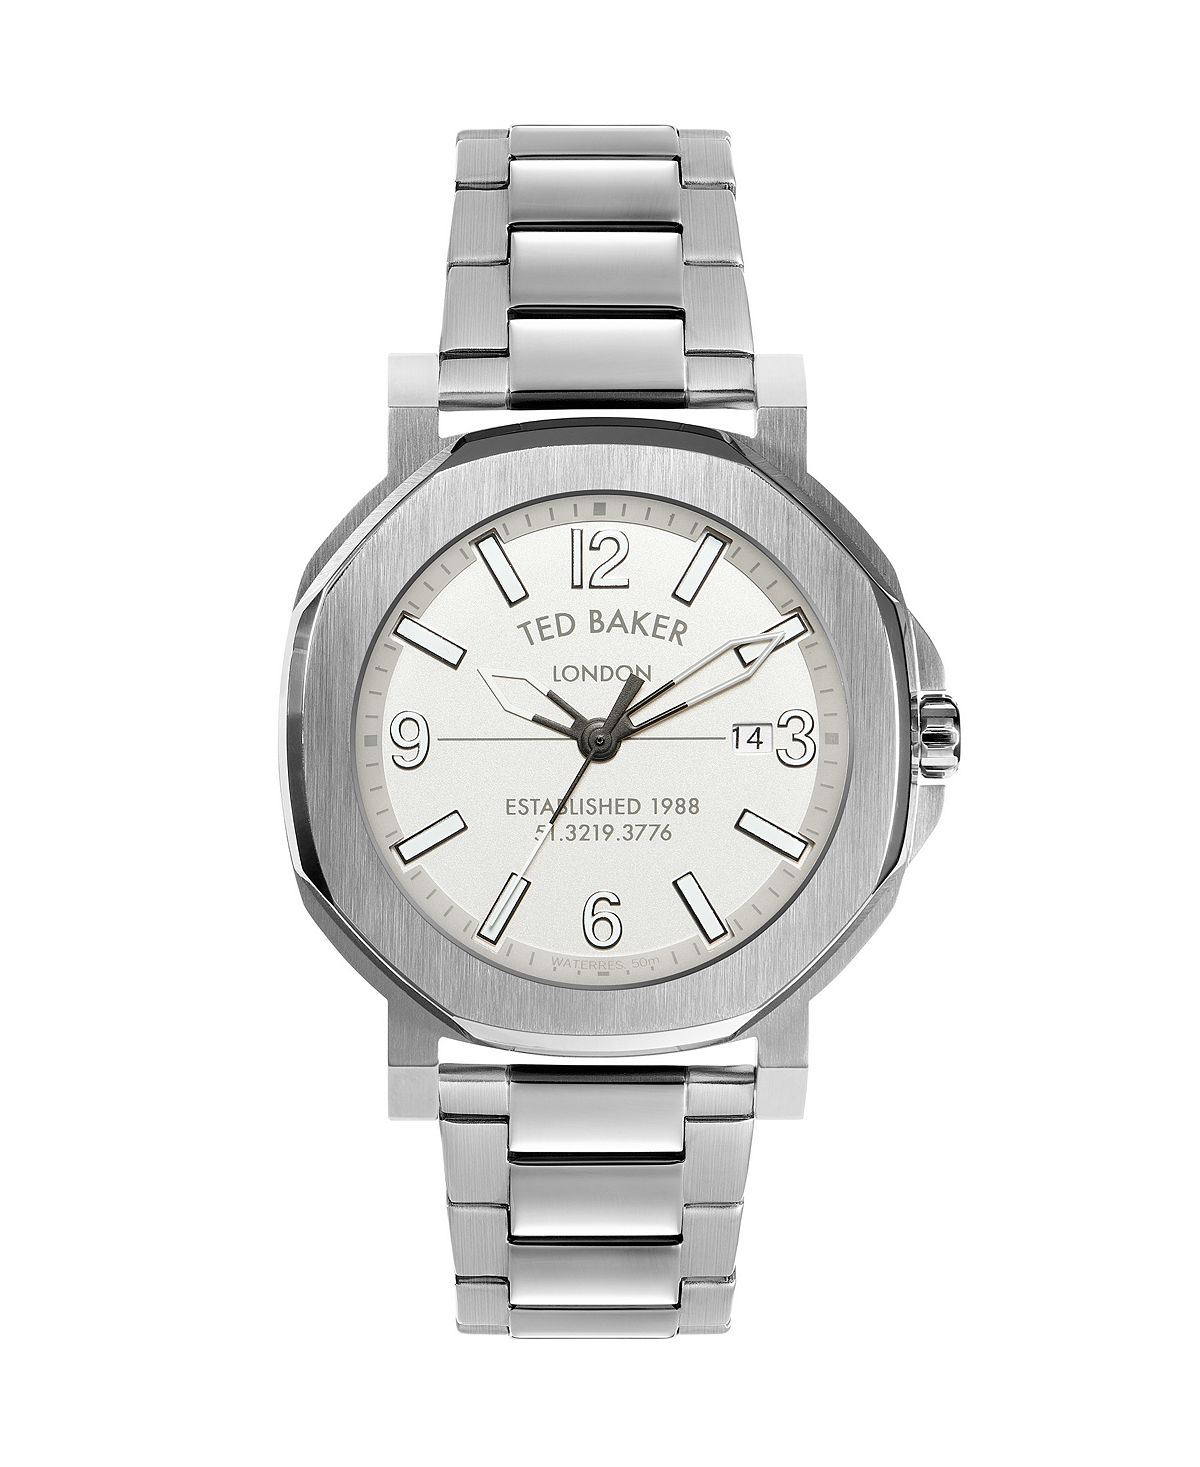 Мужские часы Actonn серебристого цвета с браслетом из нержавеющей стали, 44 мм Ted Baker женские часы maiisie серебристого цвета с браслетом из нержавеющей стали 28 мм ted baker